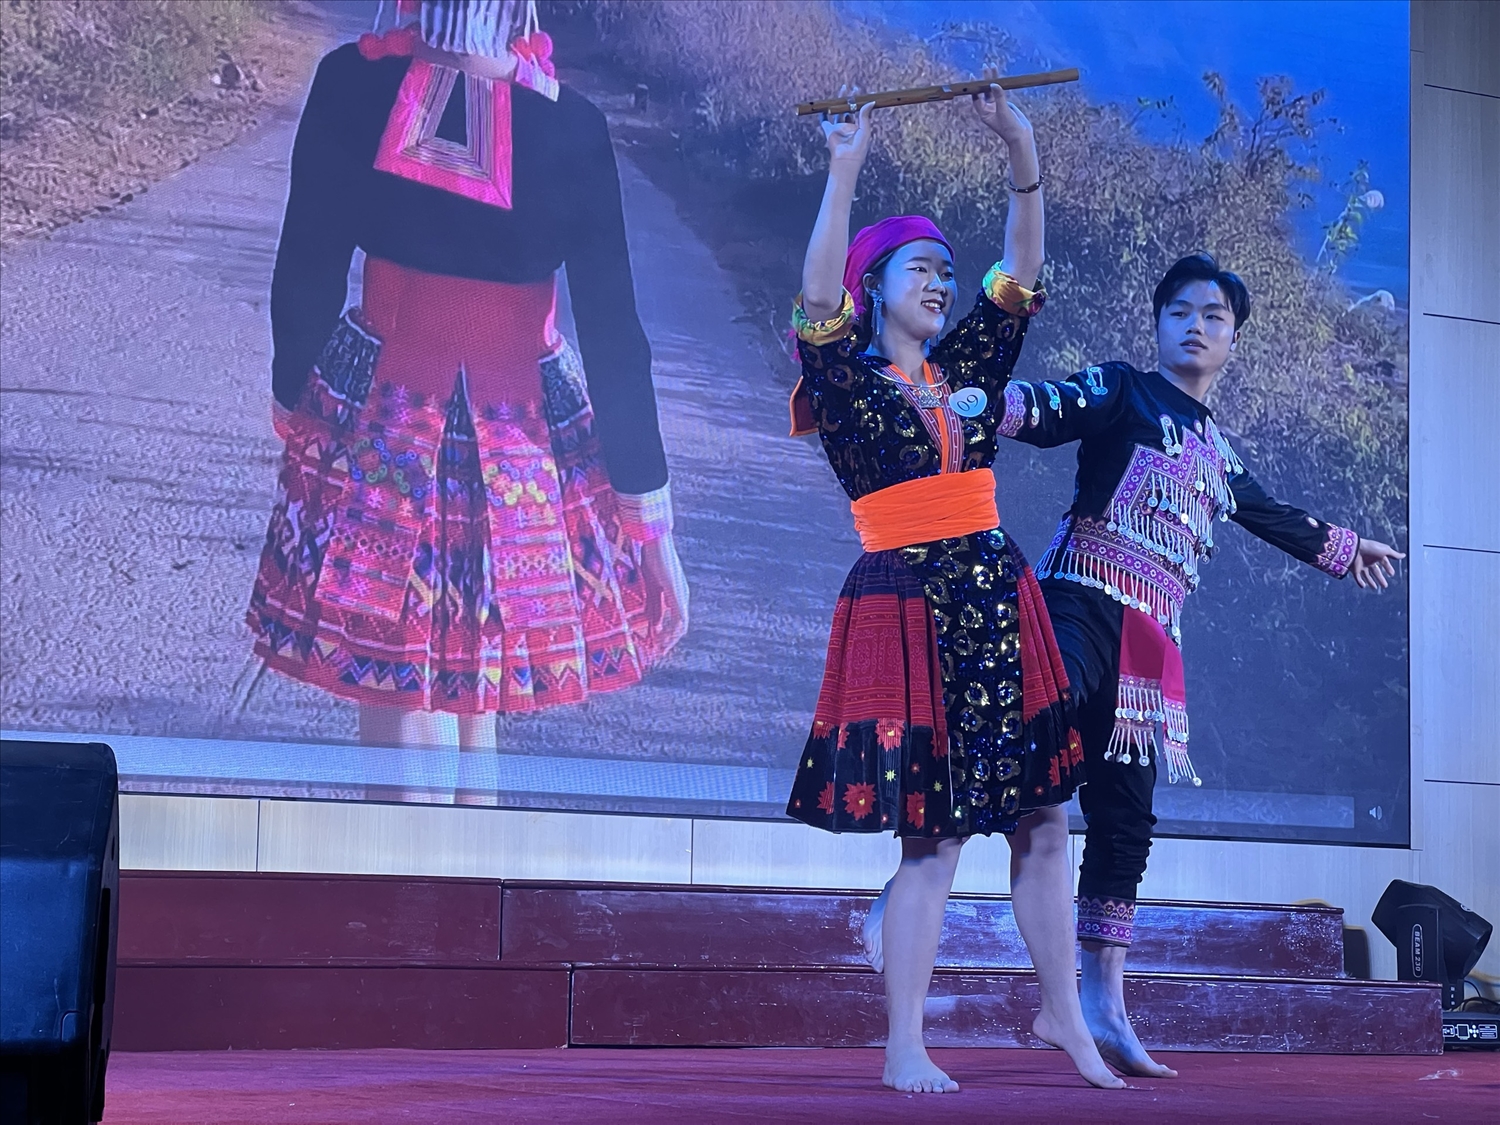 Tiết mục múa tái hiện "Vẻ đẹp cuộc sống vùng cao" của thí sinh Sùng Thị Cung, Dân tộc Mông